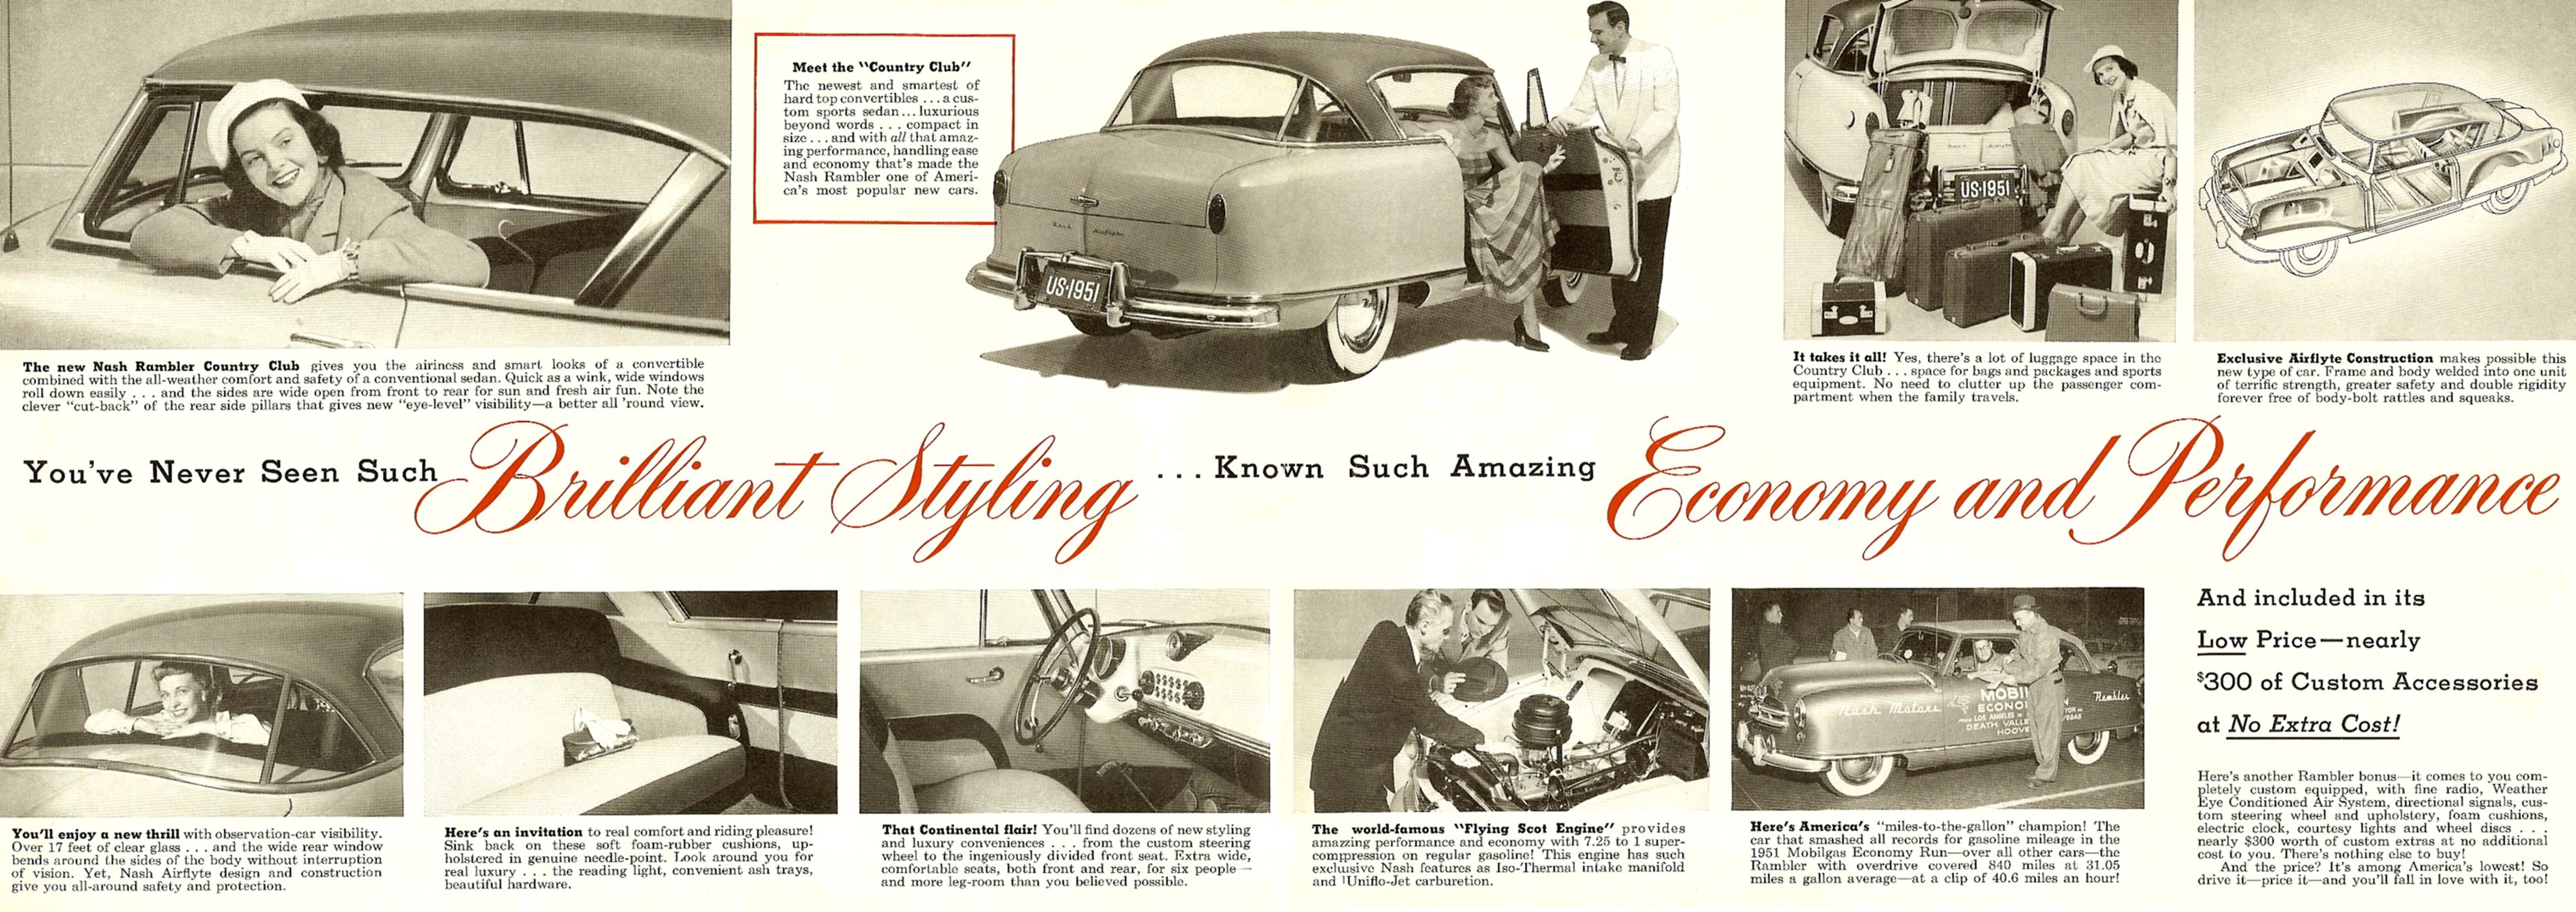 1941 Nash Prestige Brochure Page 3